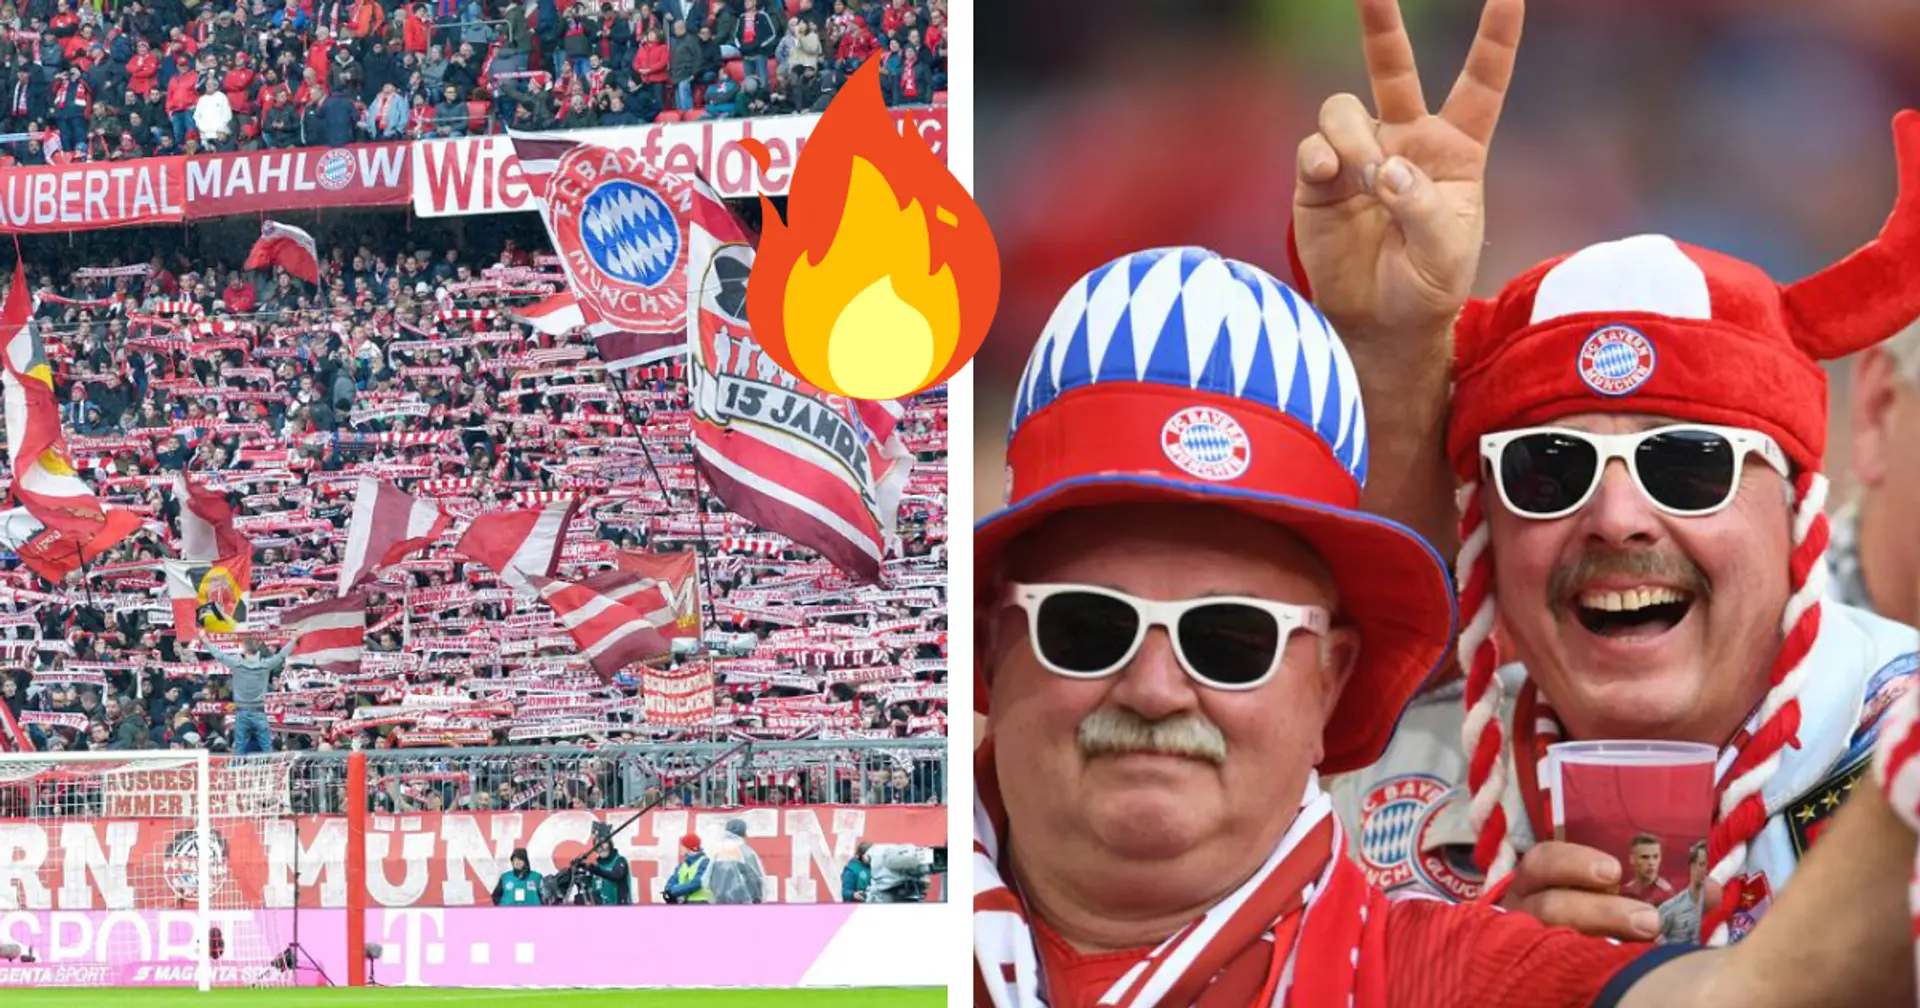 Mitgliederzahlen der Bundesligisten: Bayern bleibt an der Spitze mit riesigem Vorsprung vor Dortmund